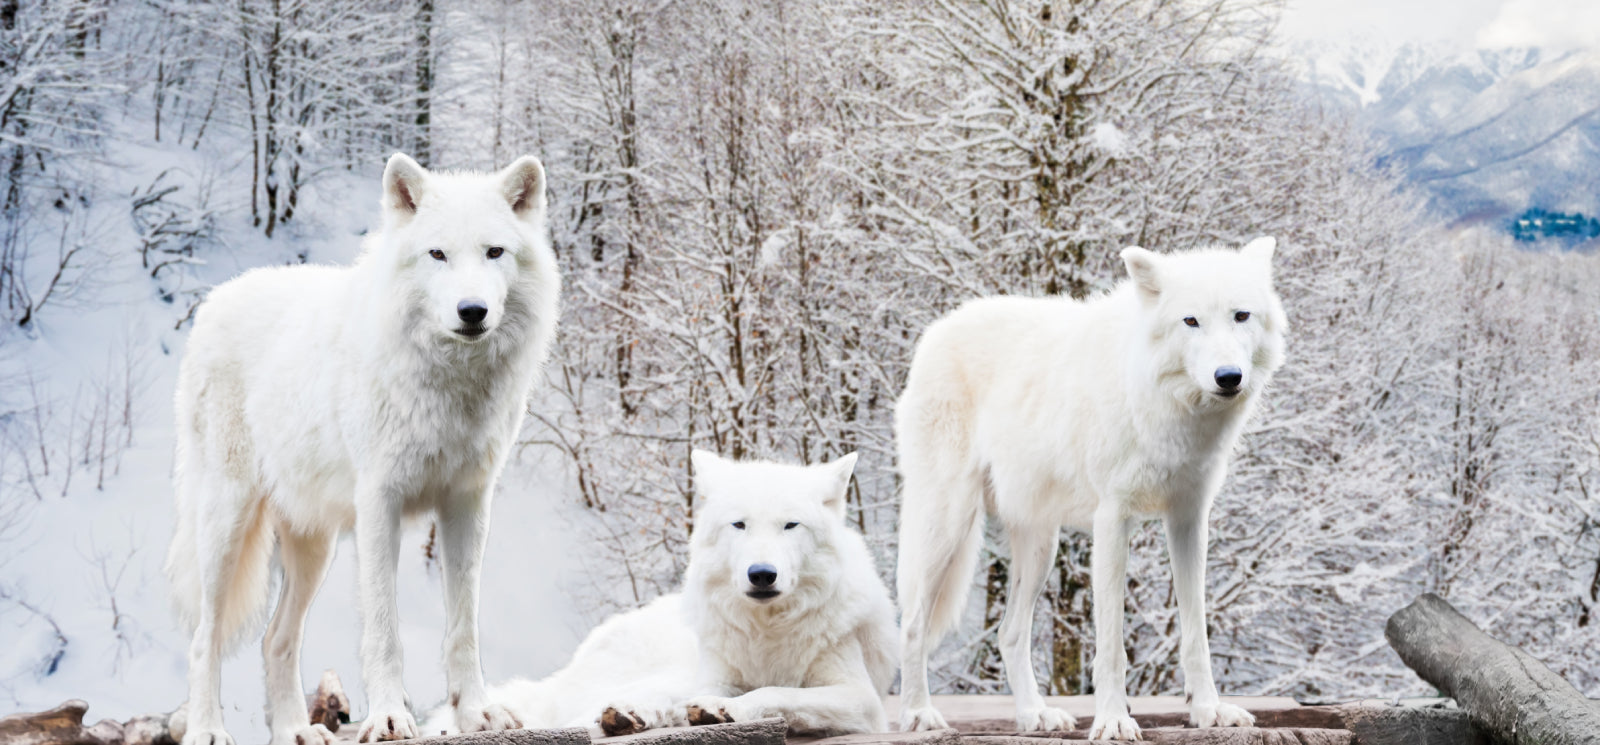 3 white wolves